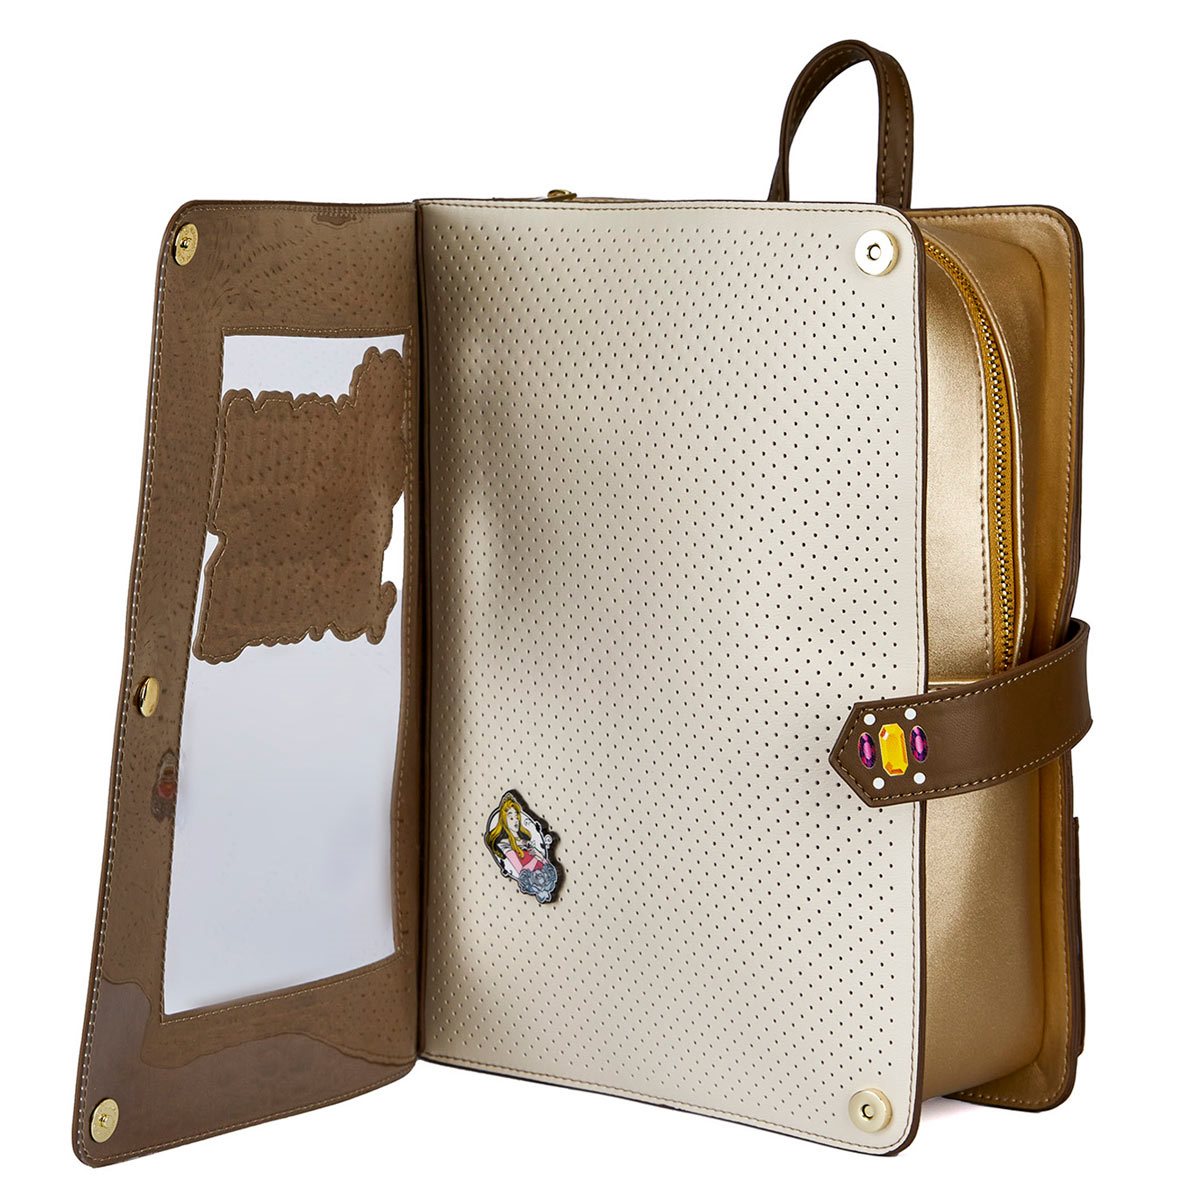 Disney Sleeping Beauty Pin Trader Backpack at Loungefly - Disney Pins Blog